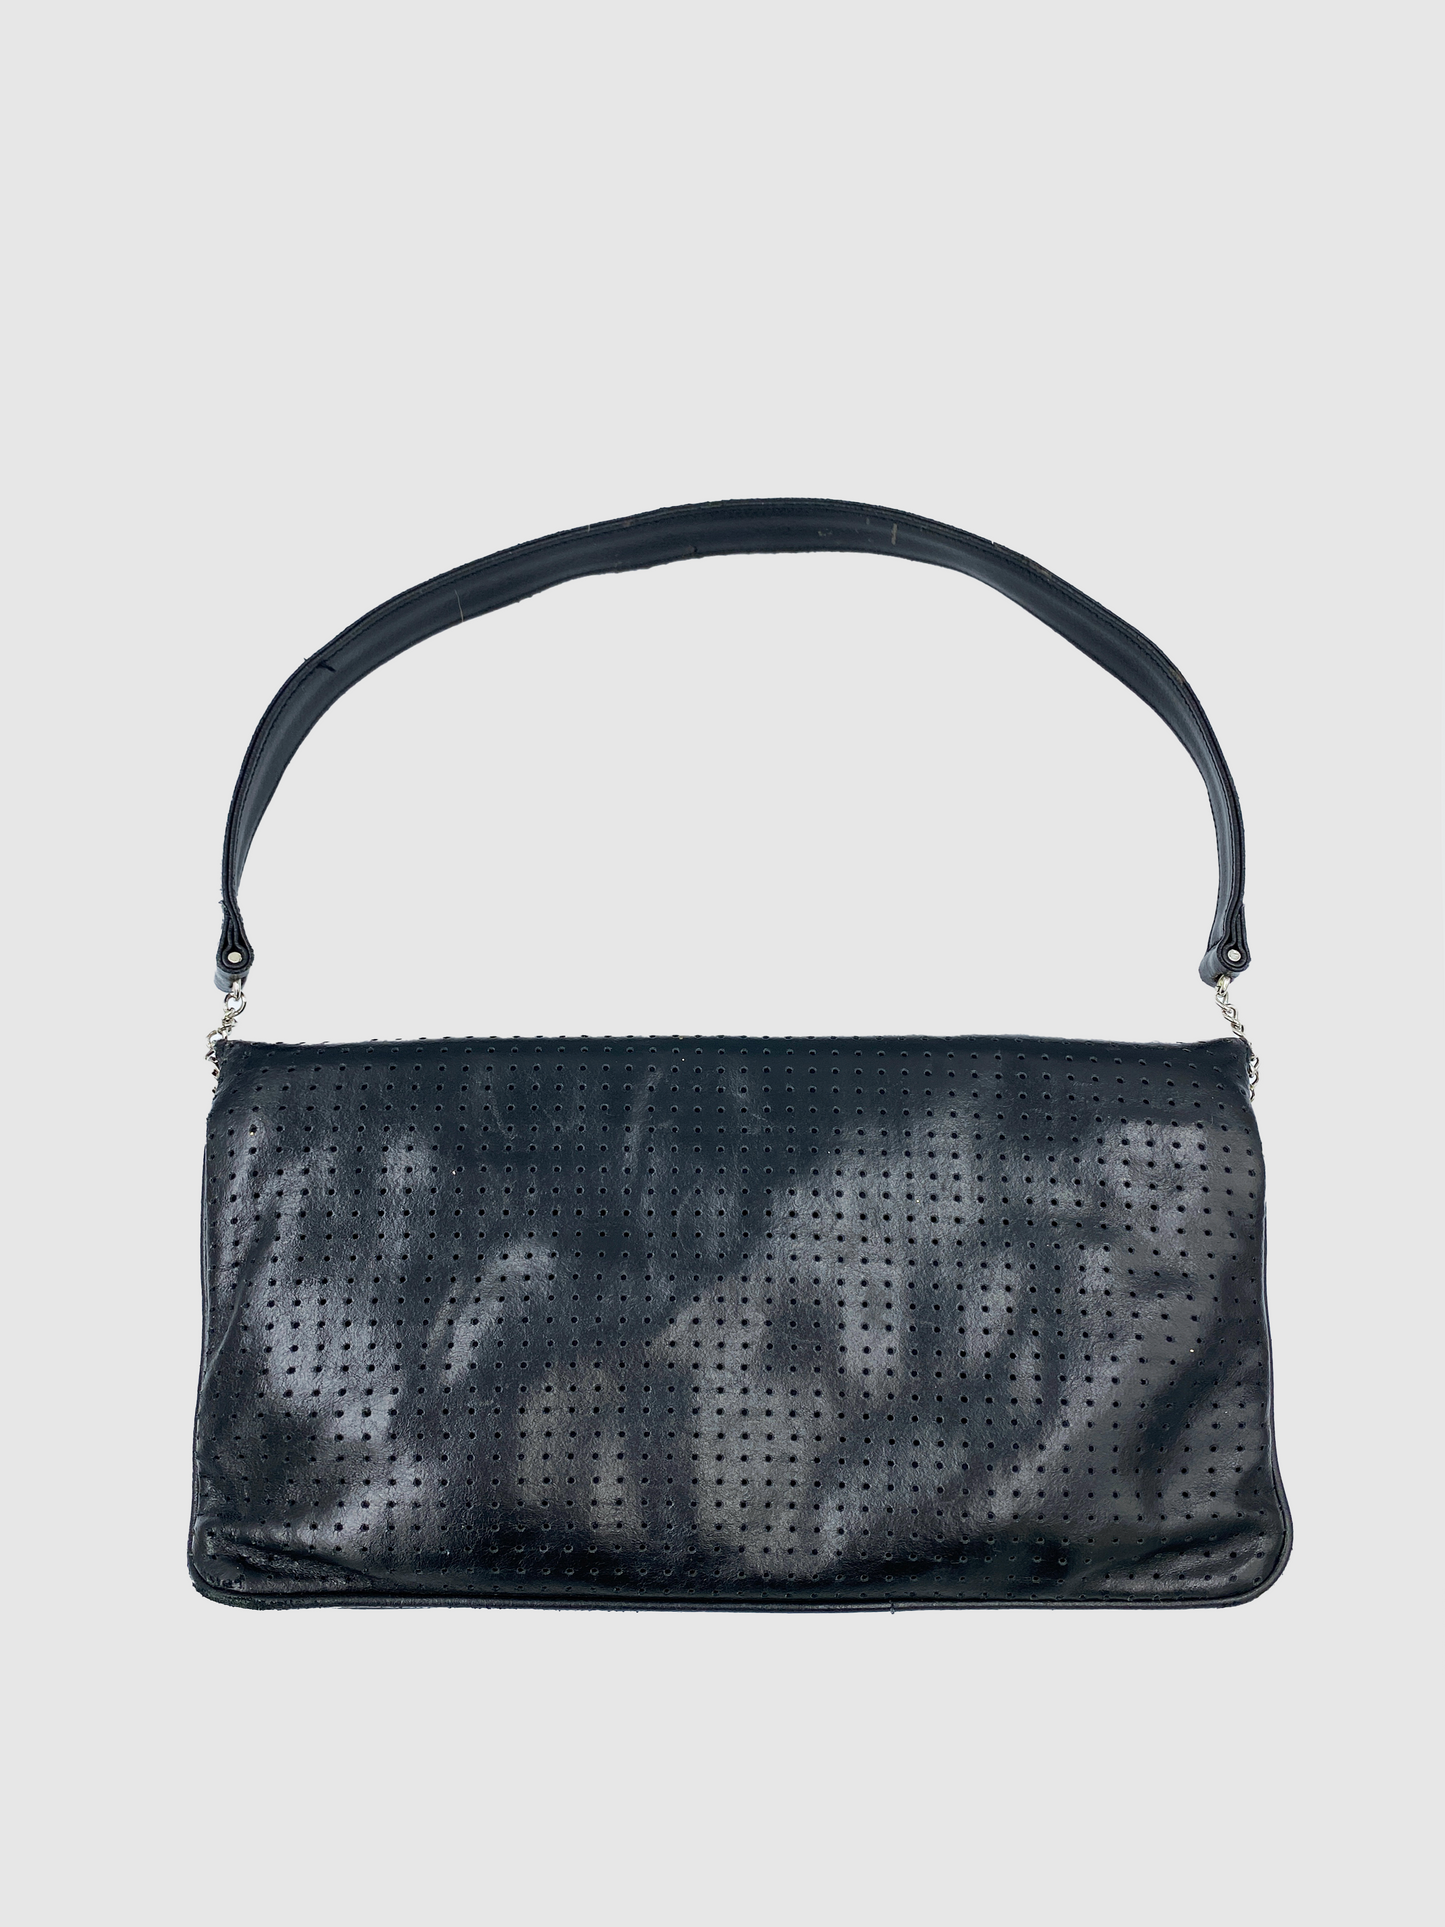 D&G Black with Flower Print Leather Shoulder Bag